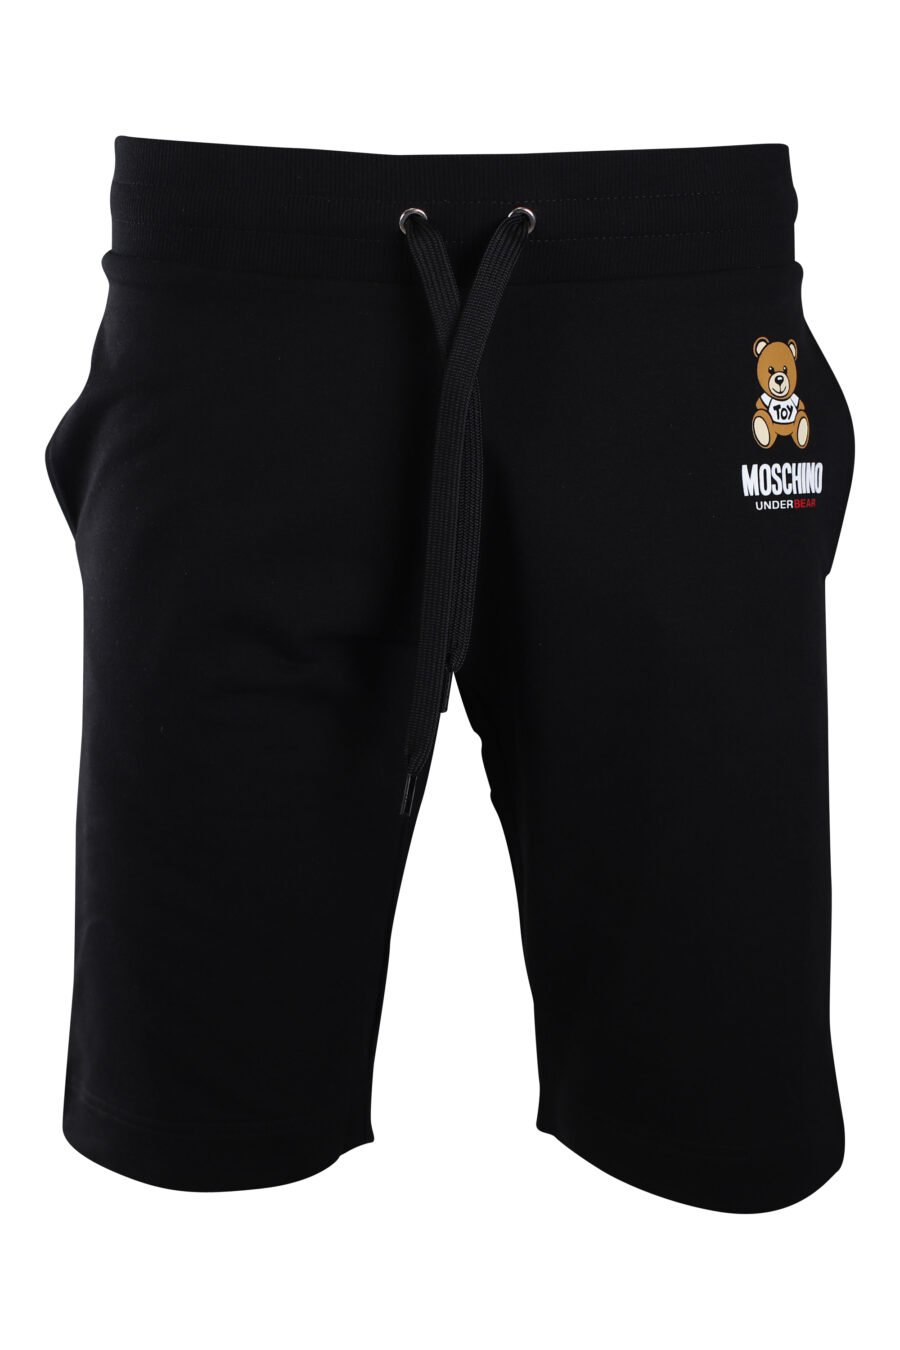 Pantalón de chándal corto negro con minilogo oso "underbear" - IMG 2228